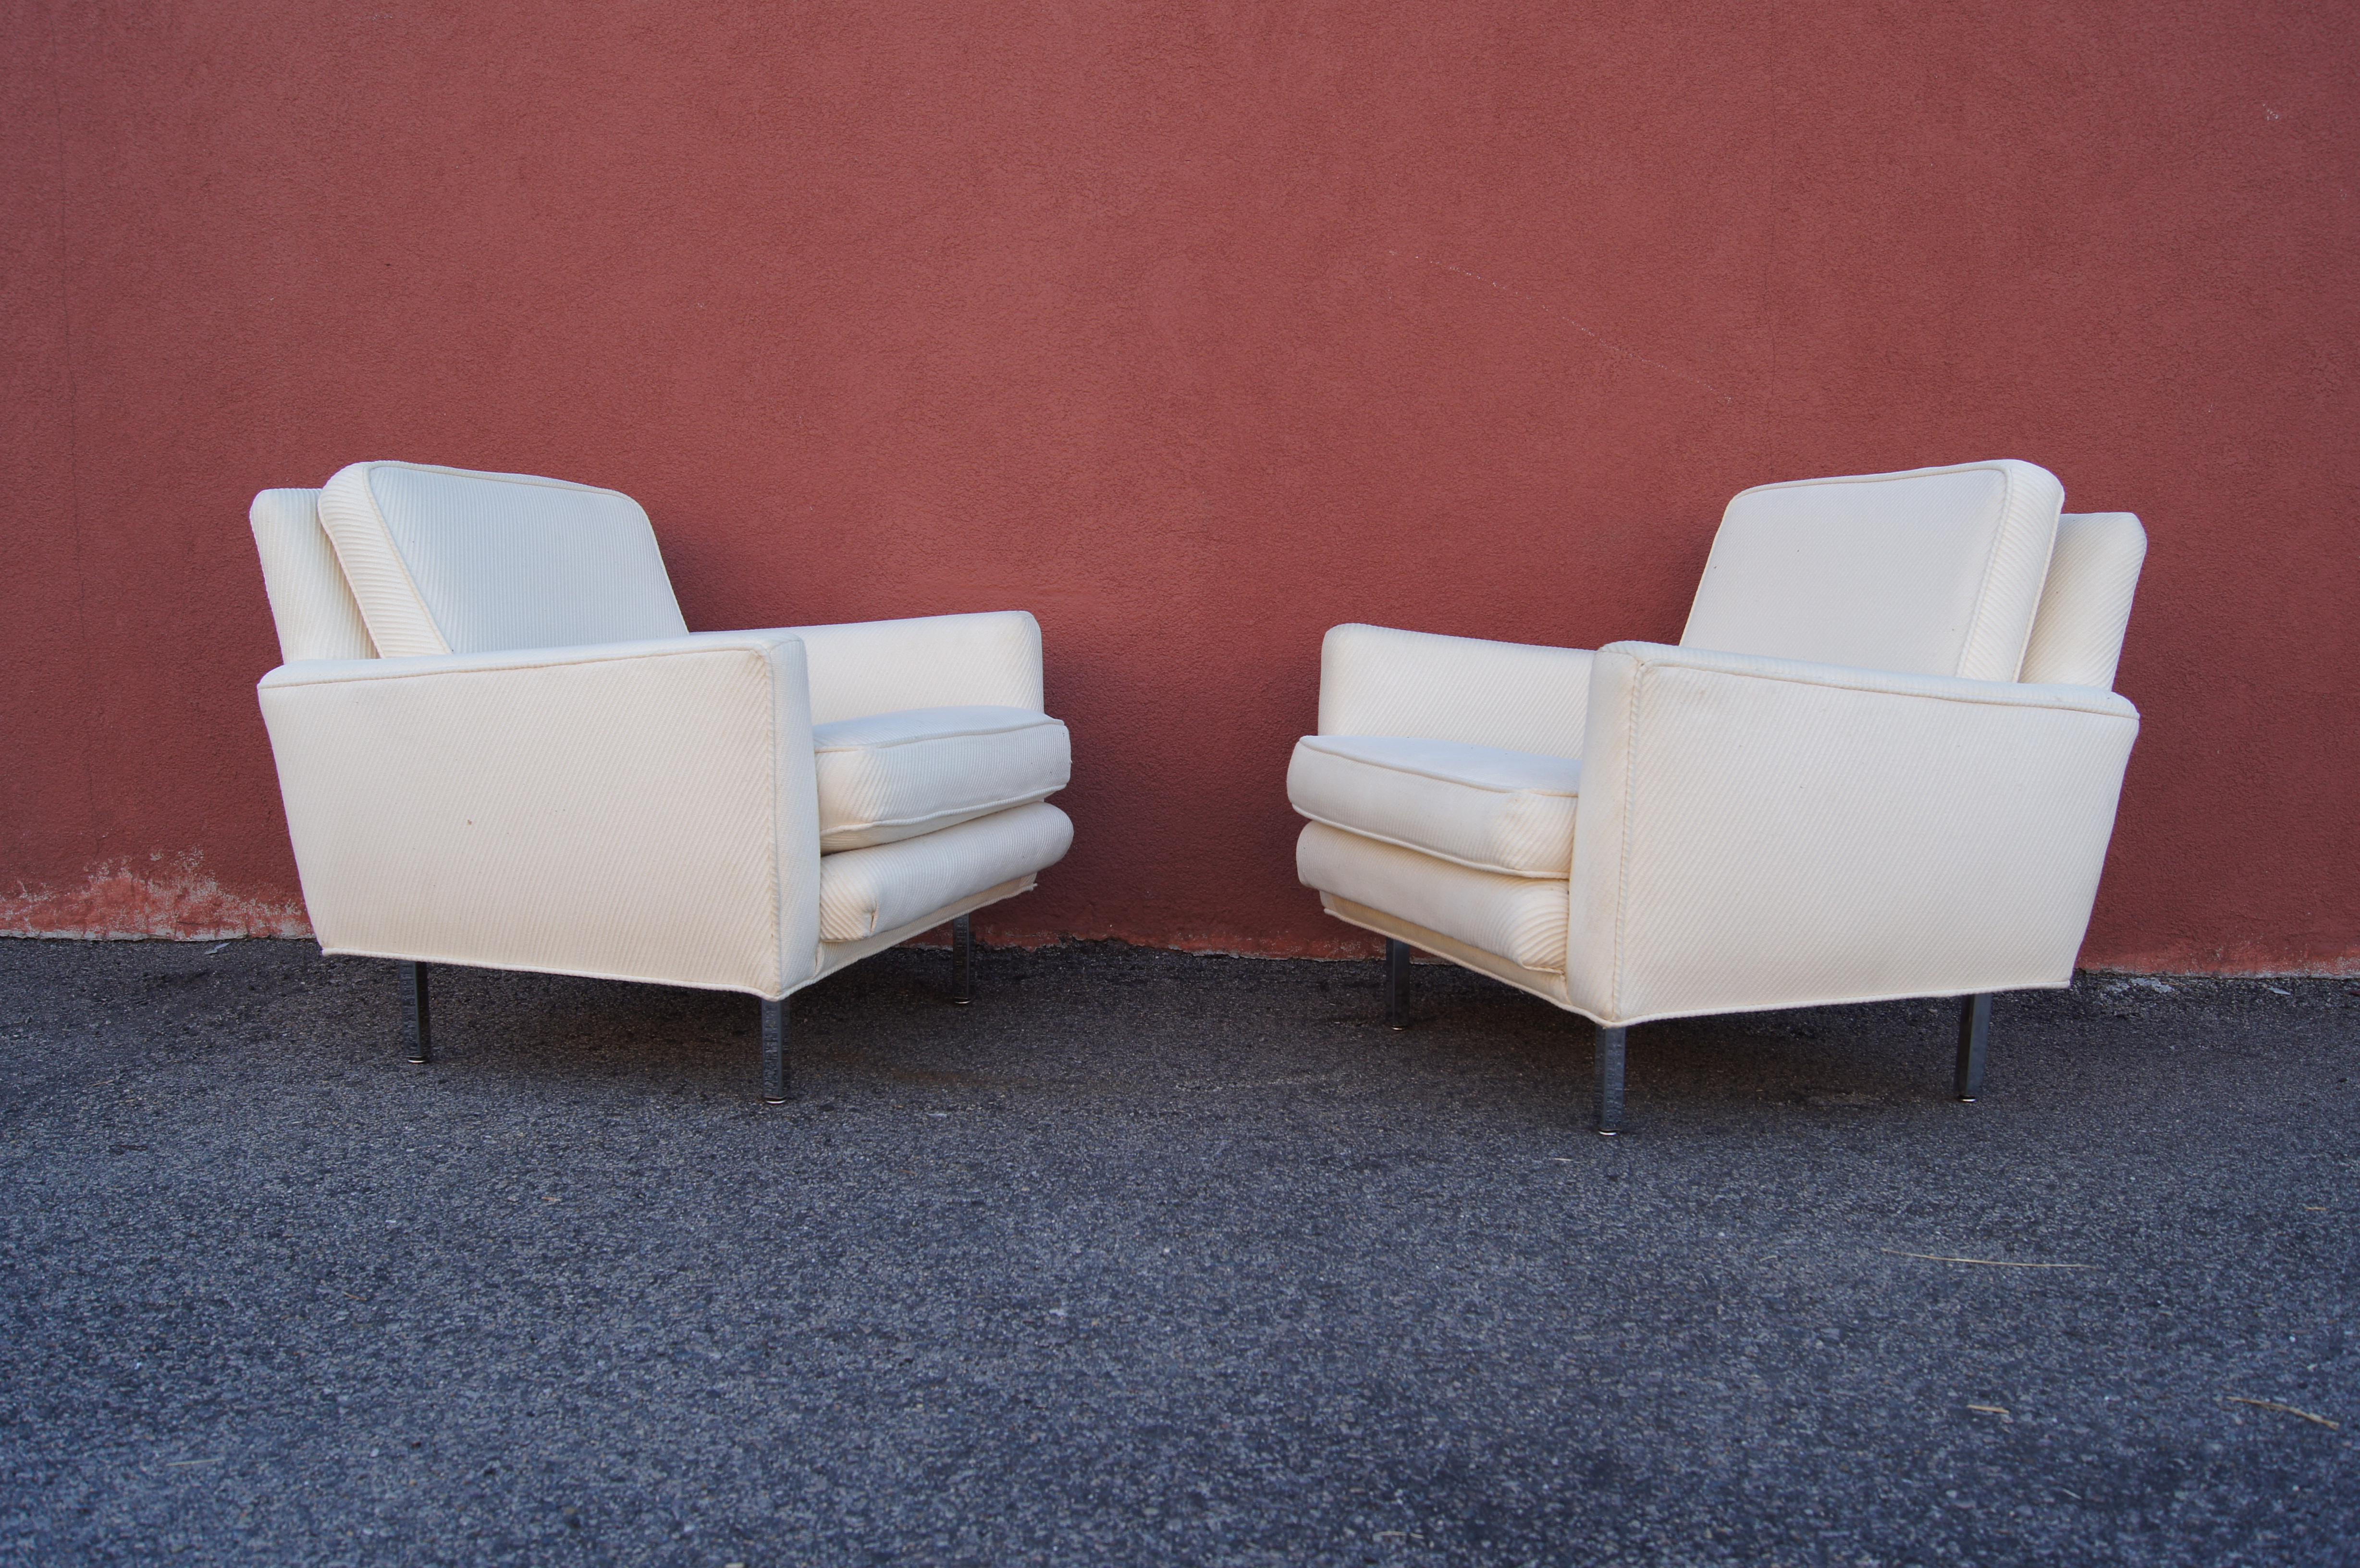 Dieses von George Nelson entworfene Paar geradliniger Sessel des Modells 5681 wurde von Herman Miller von 1956 bis 1967 hergestellt. Der auf quadratischen Chrombeinen stehende, gepolsterte Clubsitz bietet mit seiner schrägen Rückenlehne, den hohen,